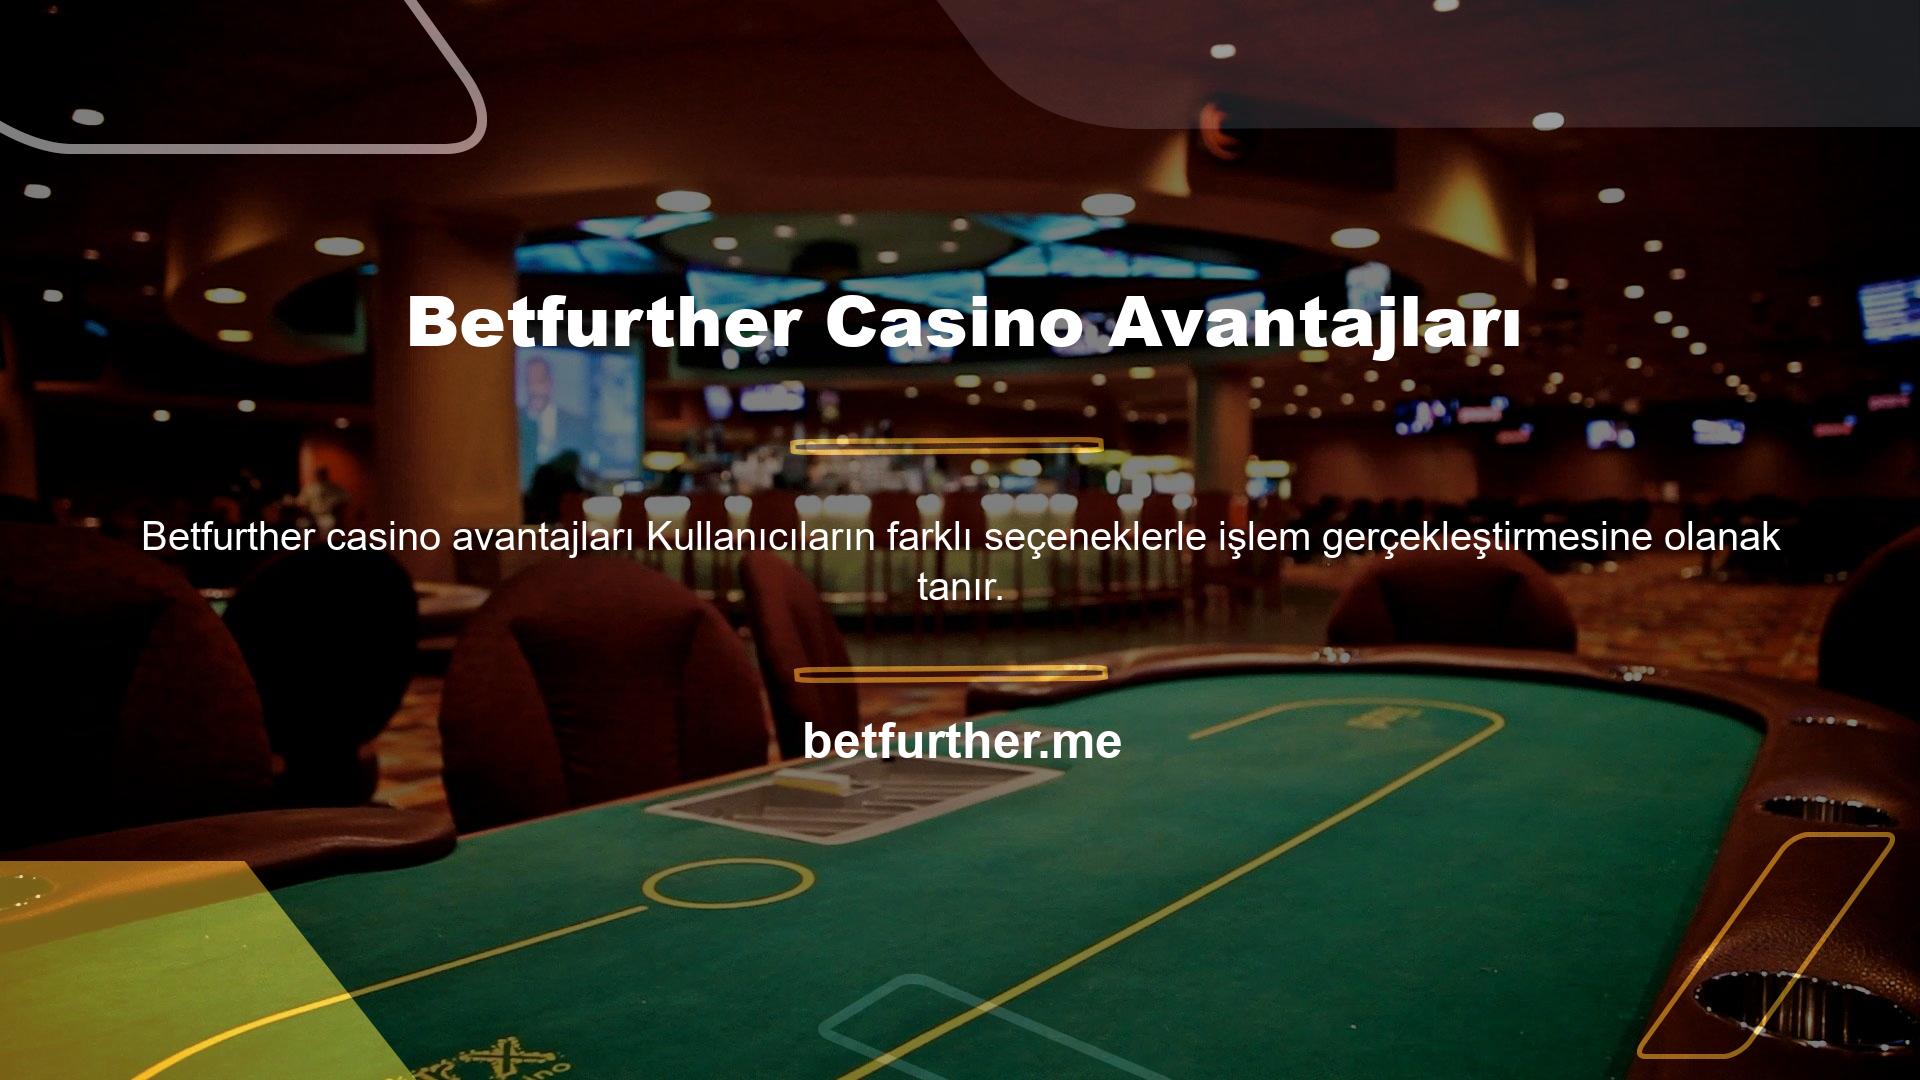 Betfurther casino avantajları casino avantajları kullanıcılara sunulmakta olup, oyunlar üzerinden kuruluma bir alternatif oluşturmaktadır